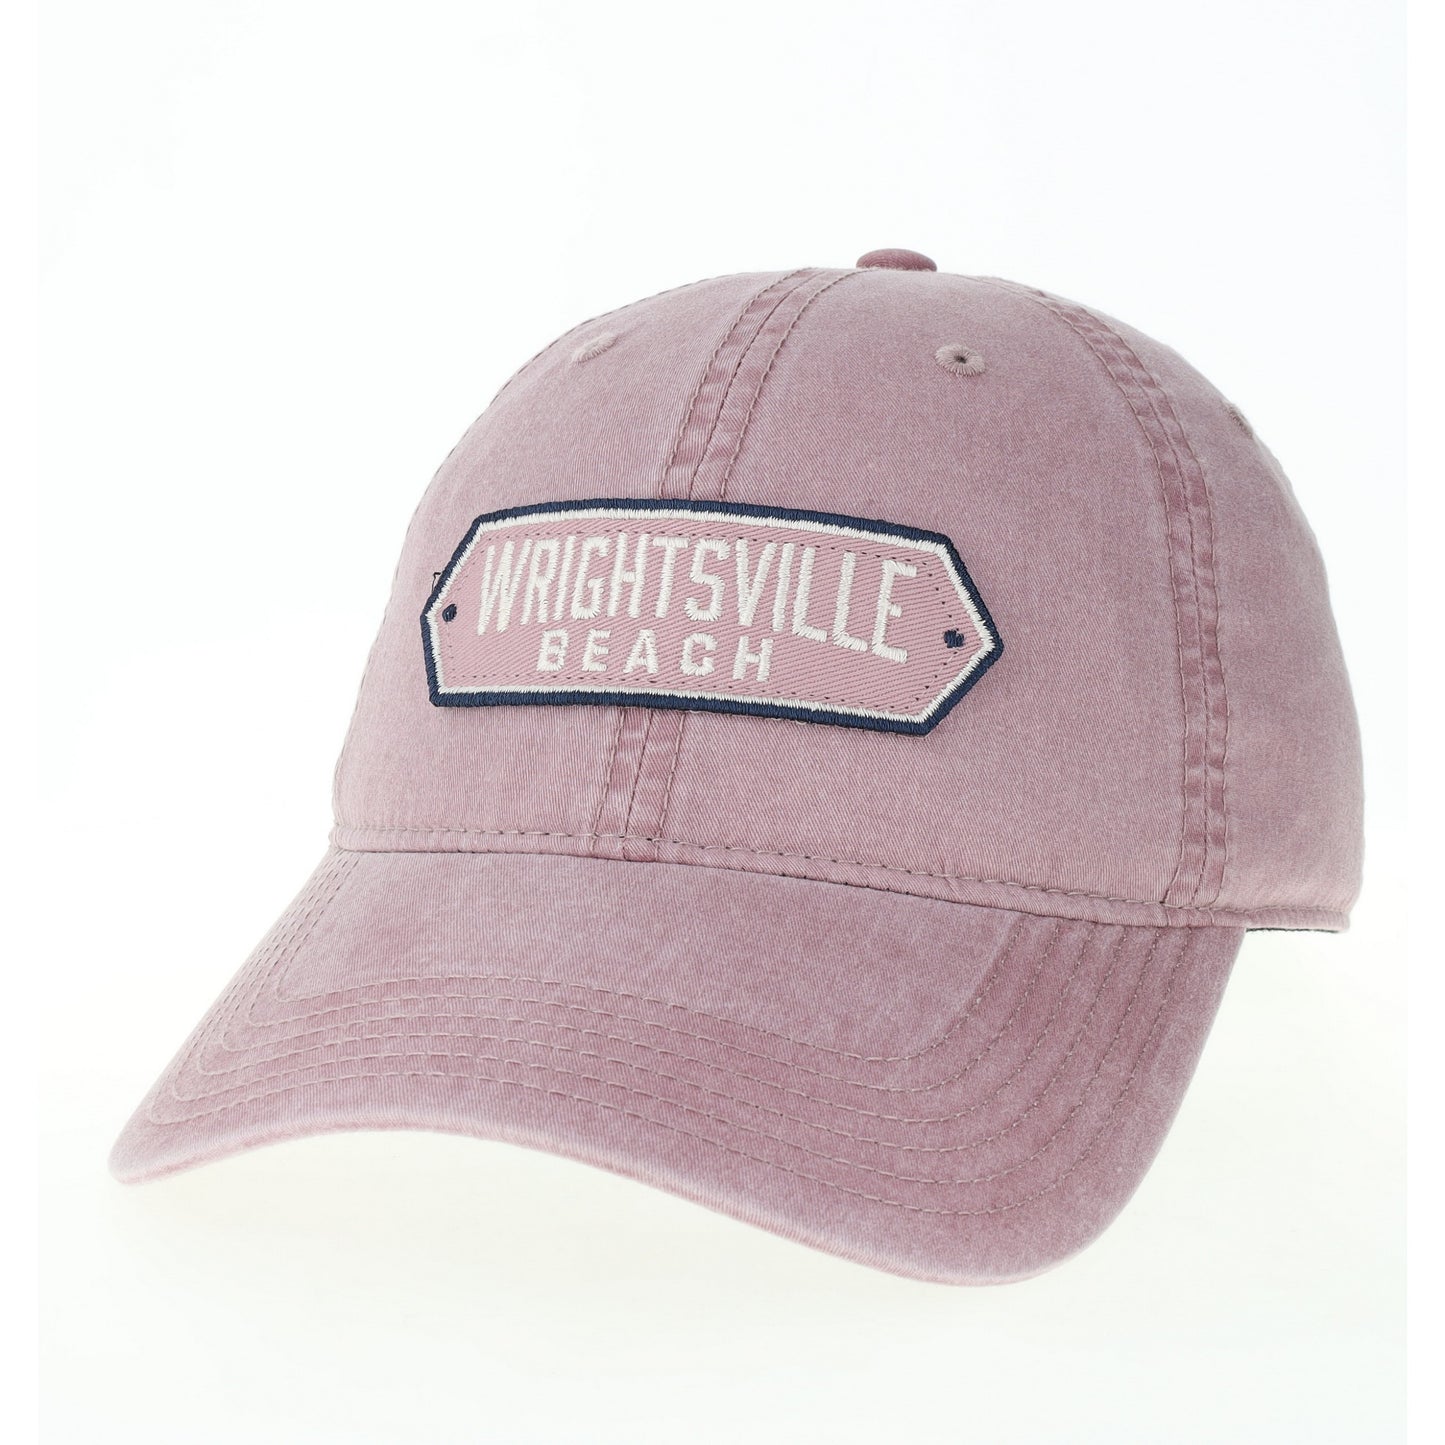 Wrightsville Beach - Hat - Pink